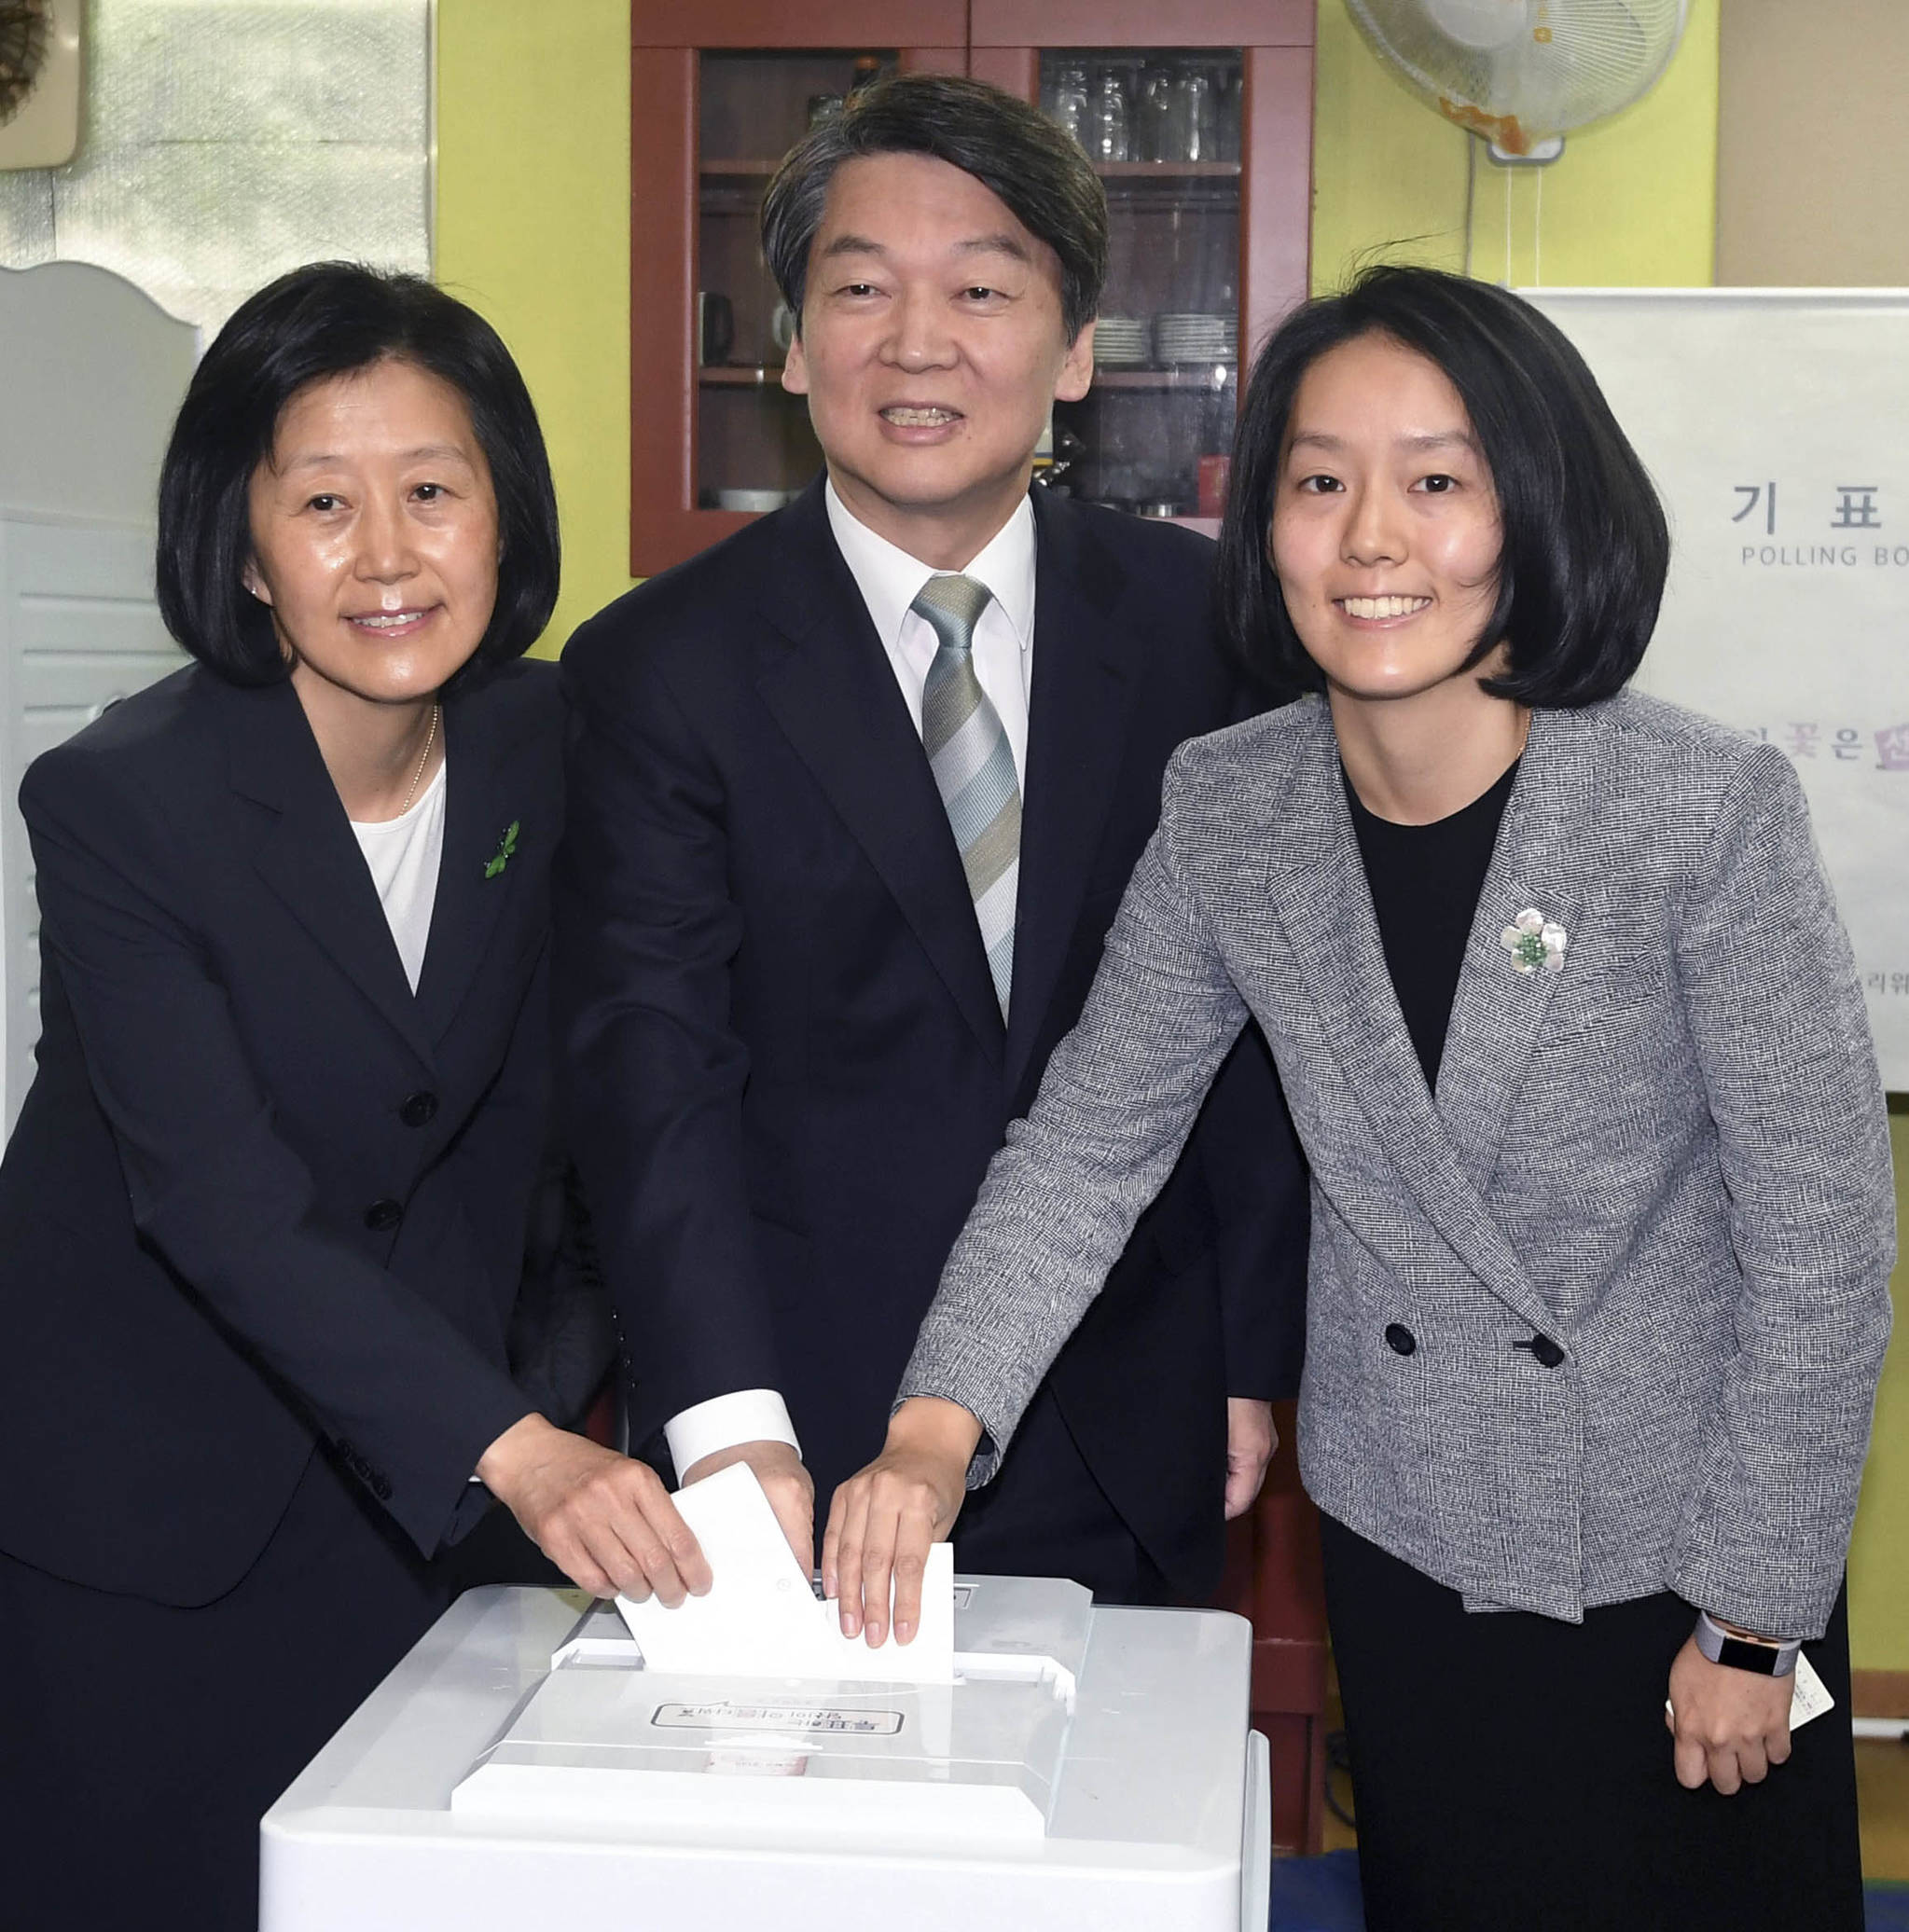 안철수 국민의당 대선후보가 9일 서울 노원구 상계동 제7투표소에서 아내 김미경 씨(왼쪽), 딸 설희 씨와 함께 투표하고 있다. 박종근 기자